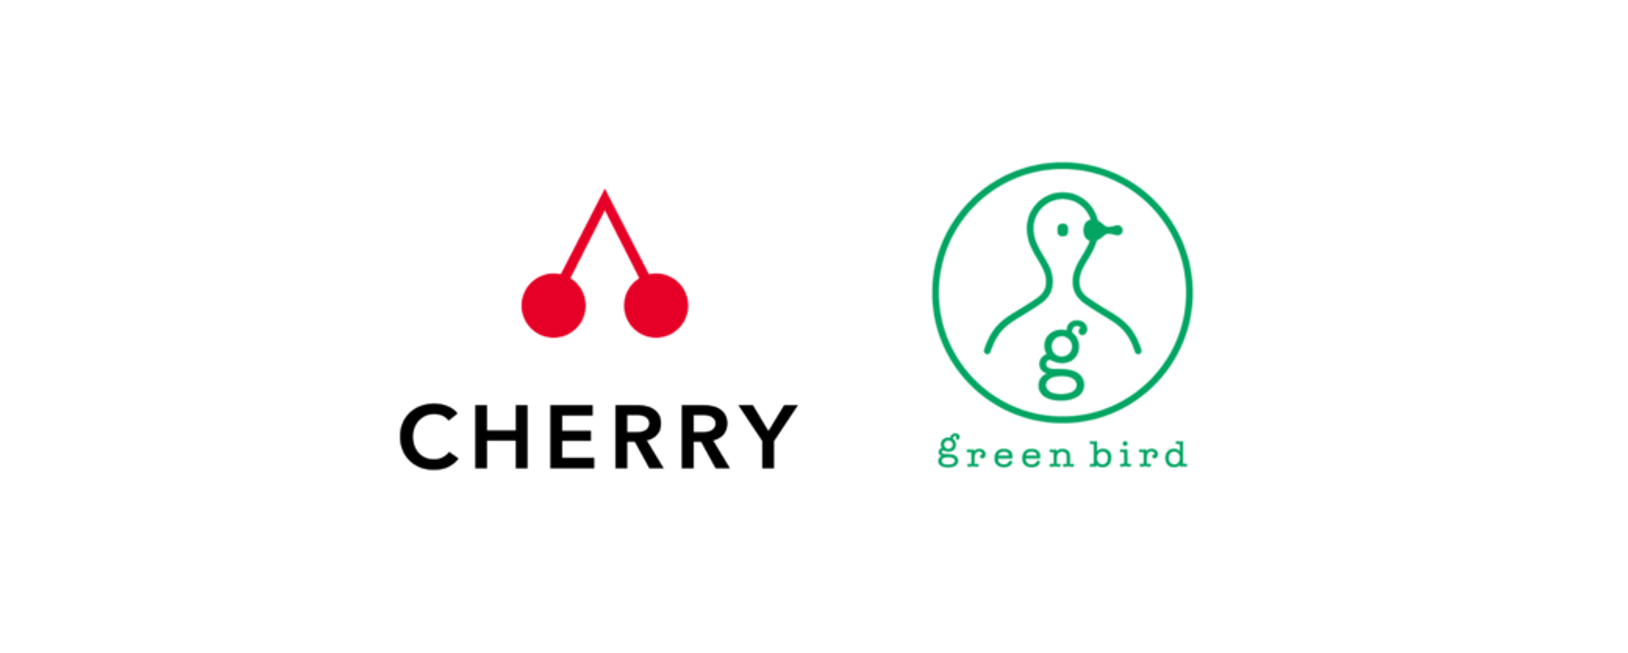 「CHERRY」が特定非営利活動法人「グリーンバード」と協業し、環境保全に関するブランドコミュニケーションをサポートするプロジェクトを開始<